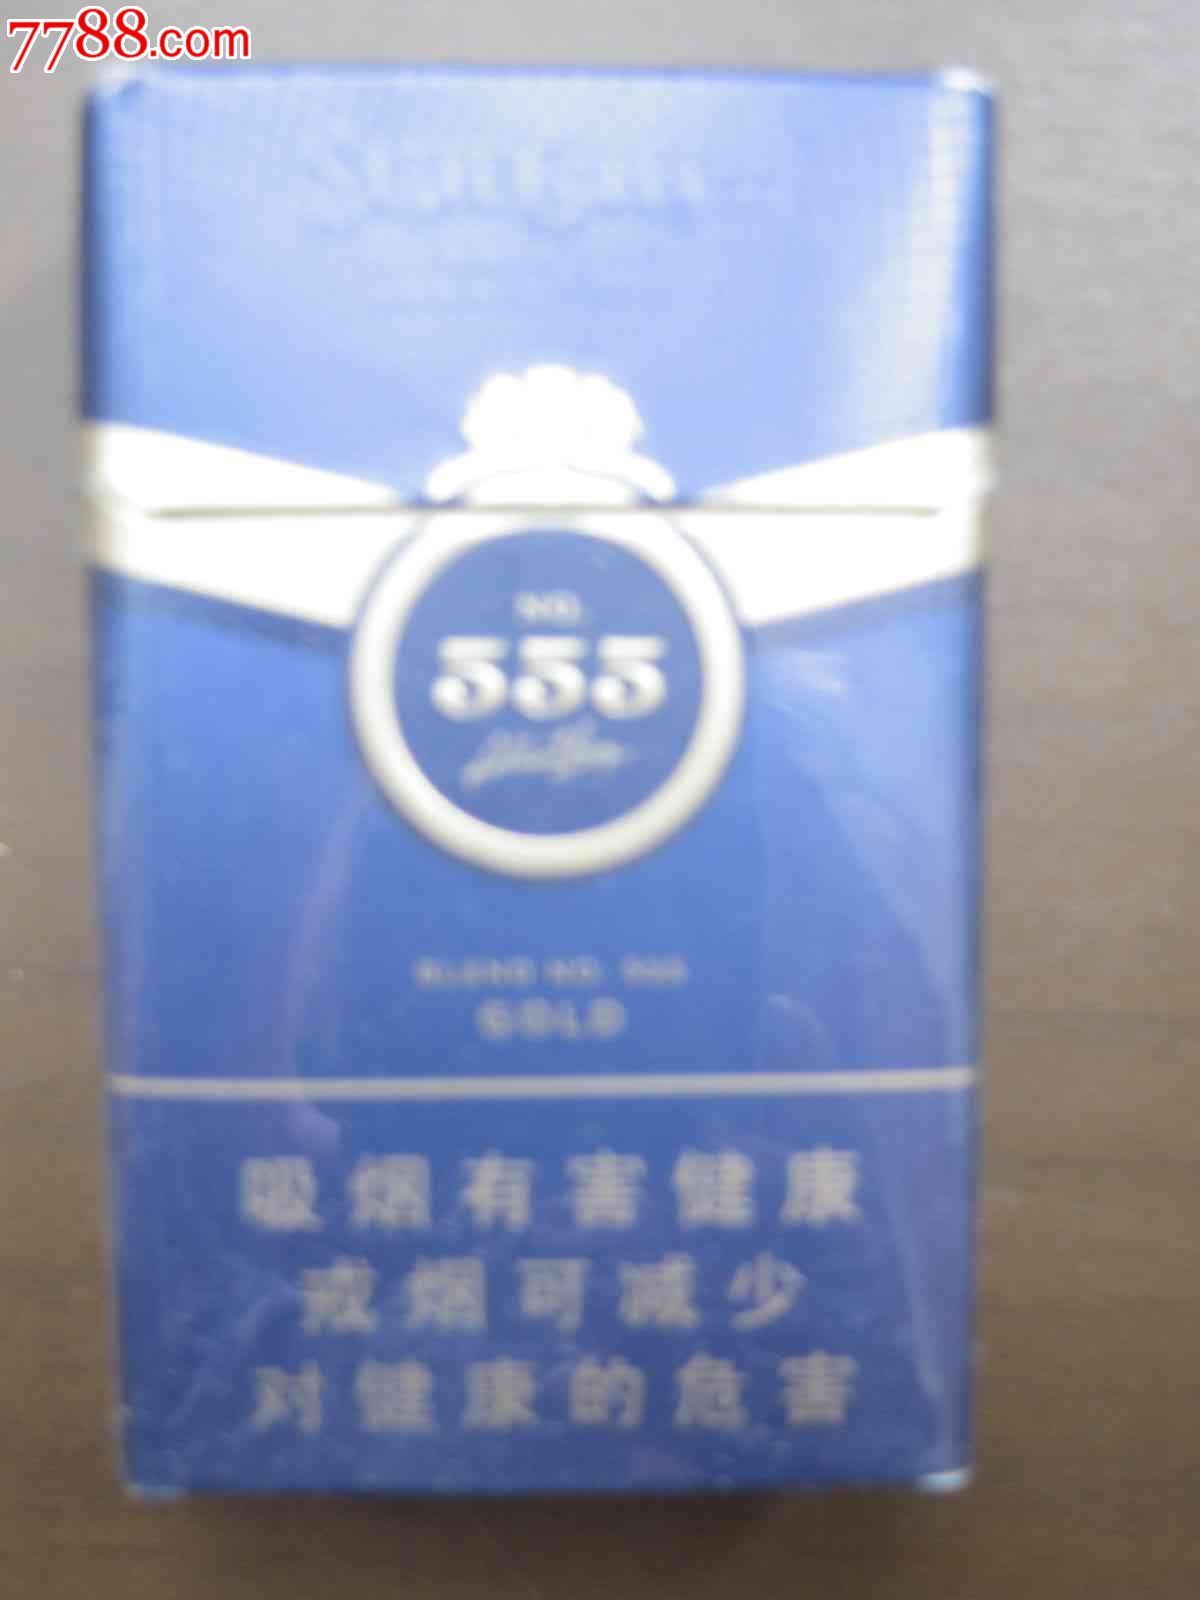 555-配方555金-12版-价格:2元-se26101894-烟标/烟盒-零售-7788